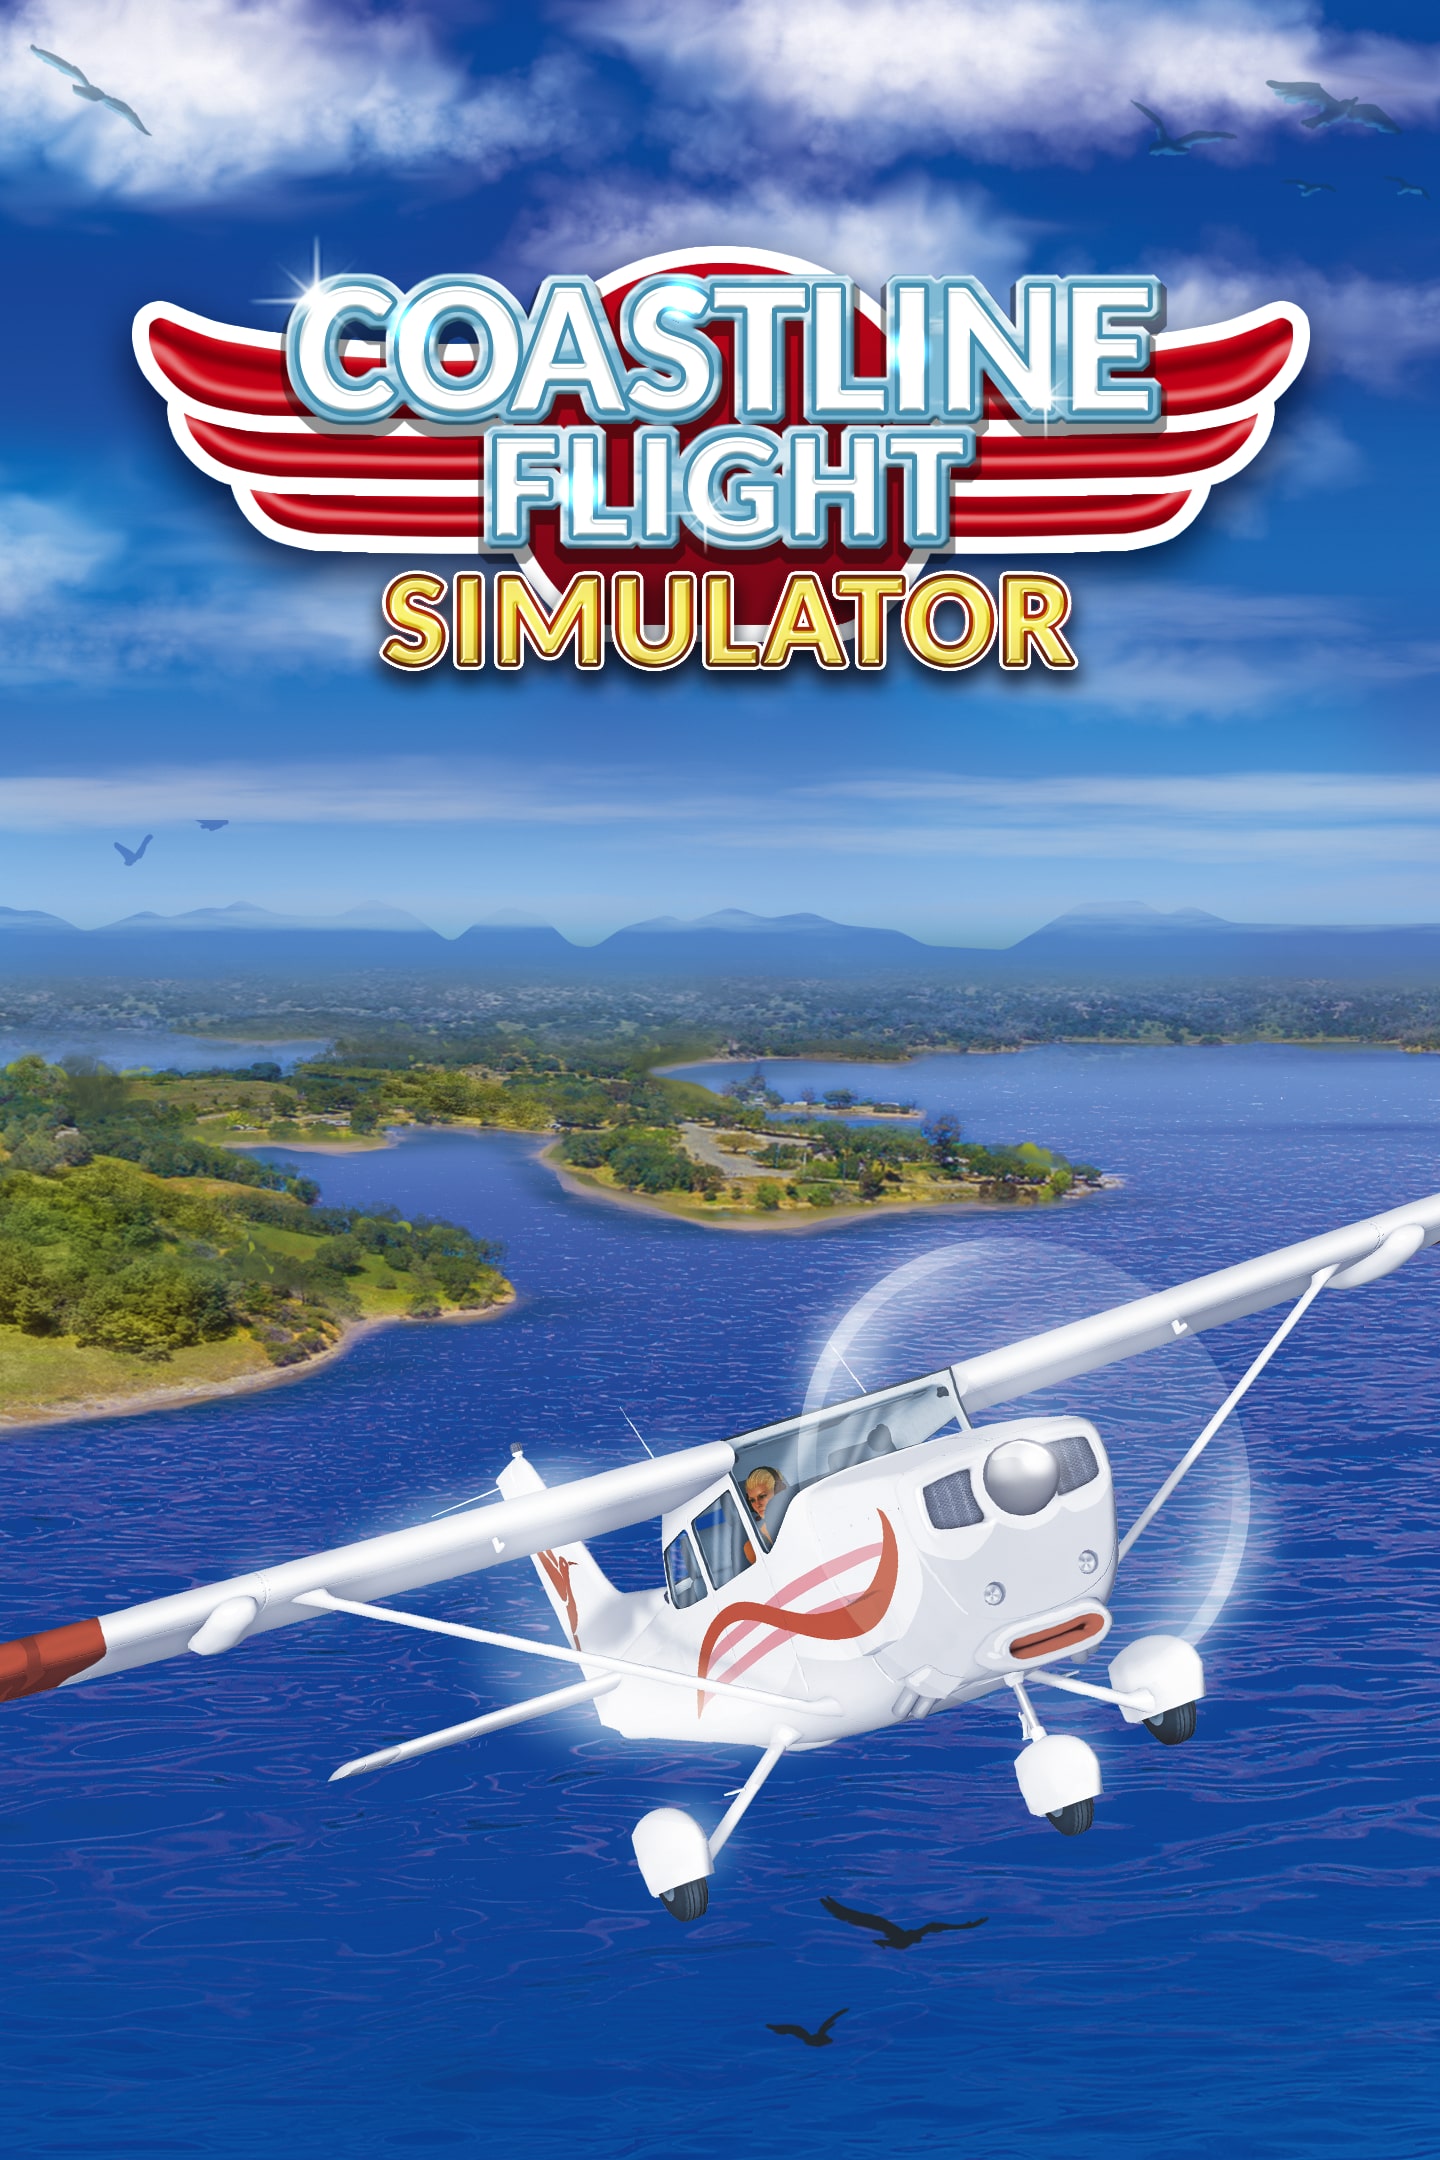 Island Flight Simulator Playstation 4: playstation_4: Video Games 